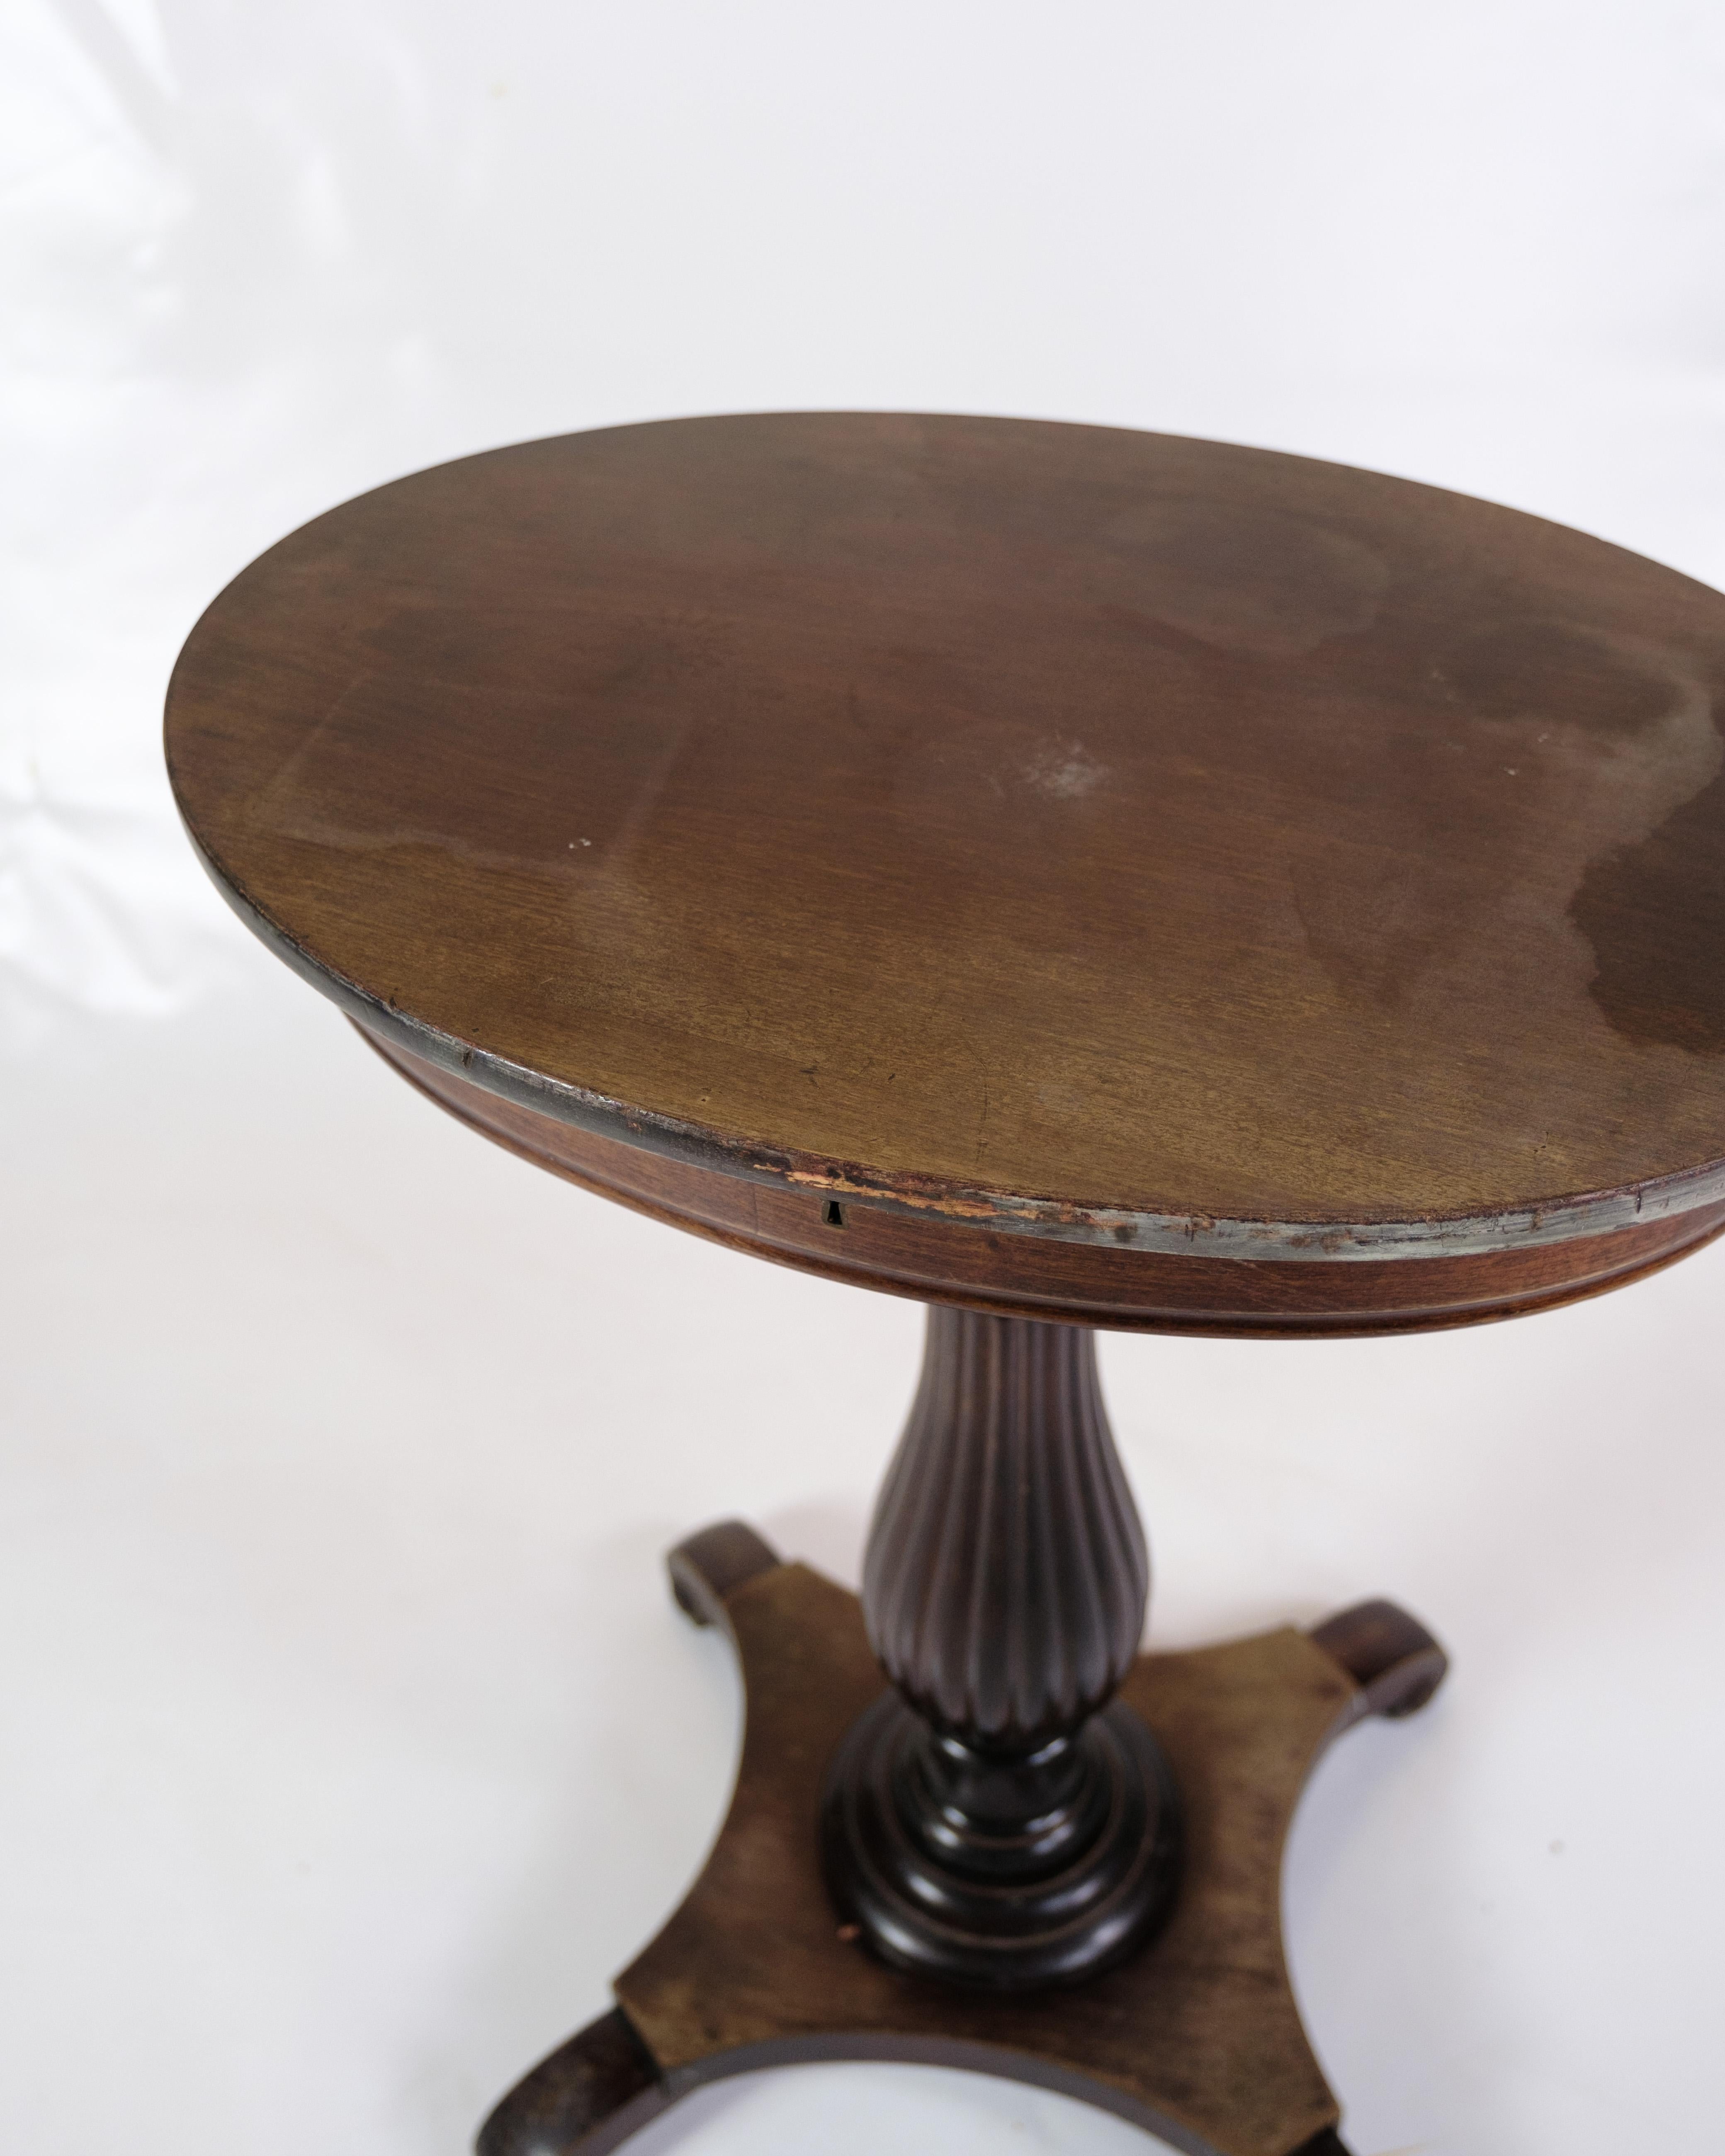 Dieser elegante Beistelltisch ist ein schönes Beispiel für Möbelhandwerk aus dem 19. Jahrhundert, genauer gesagt aus dem Jahr 1890. Dieser ovale Beistelltisch aus Mahagoni strahlt zeitlose Schönheit und eine warme, natürliche Ausstrahlung aus.

Das